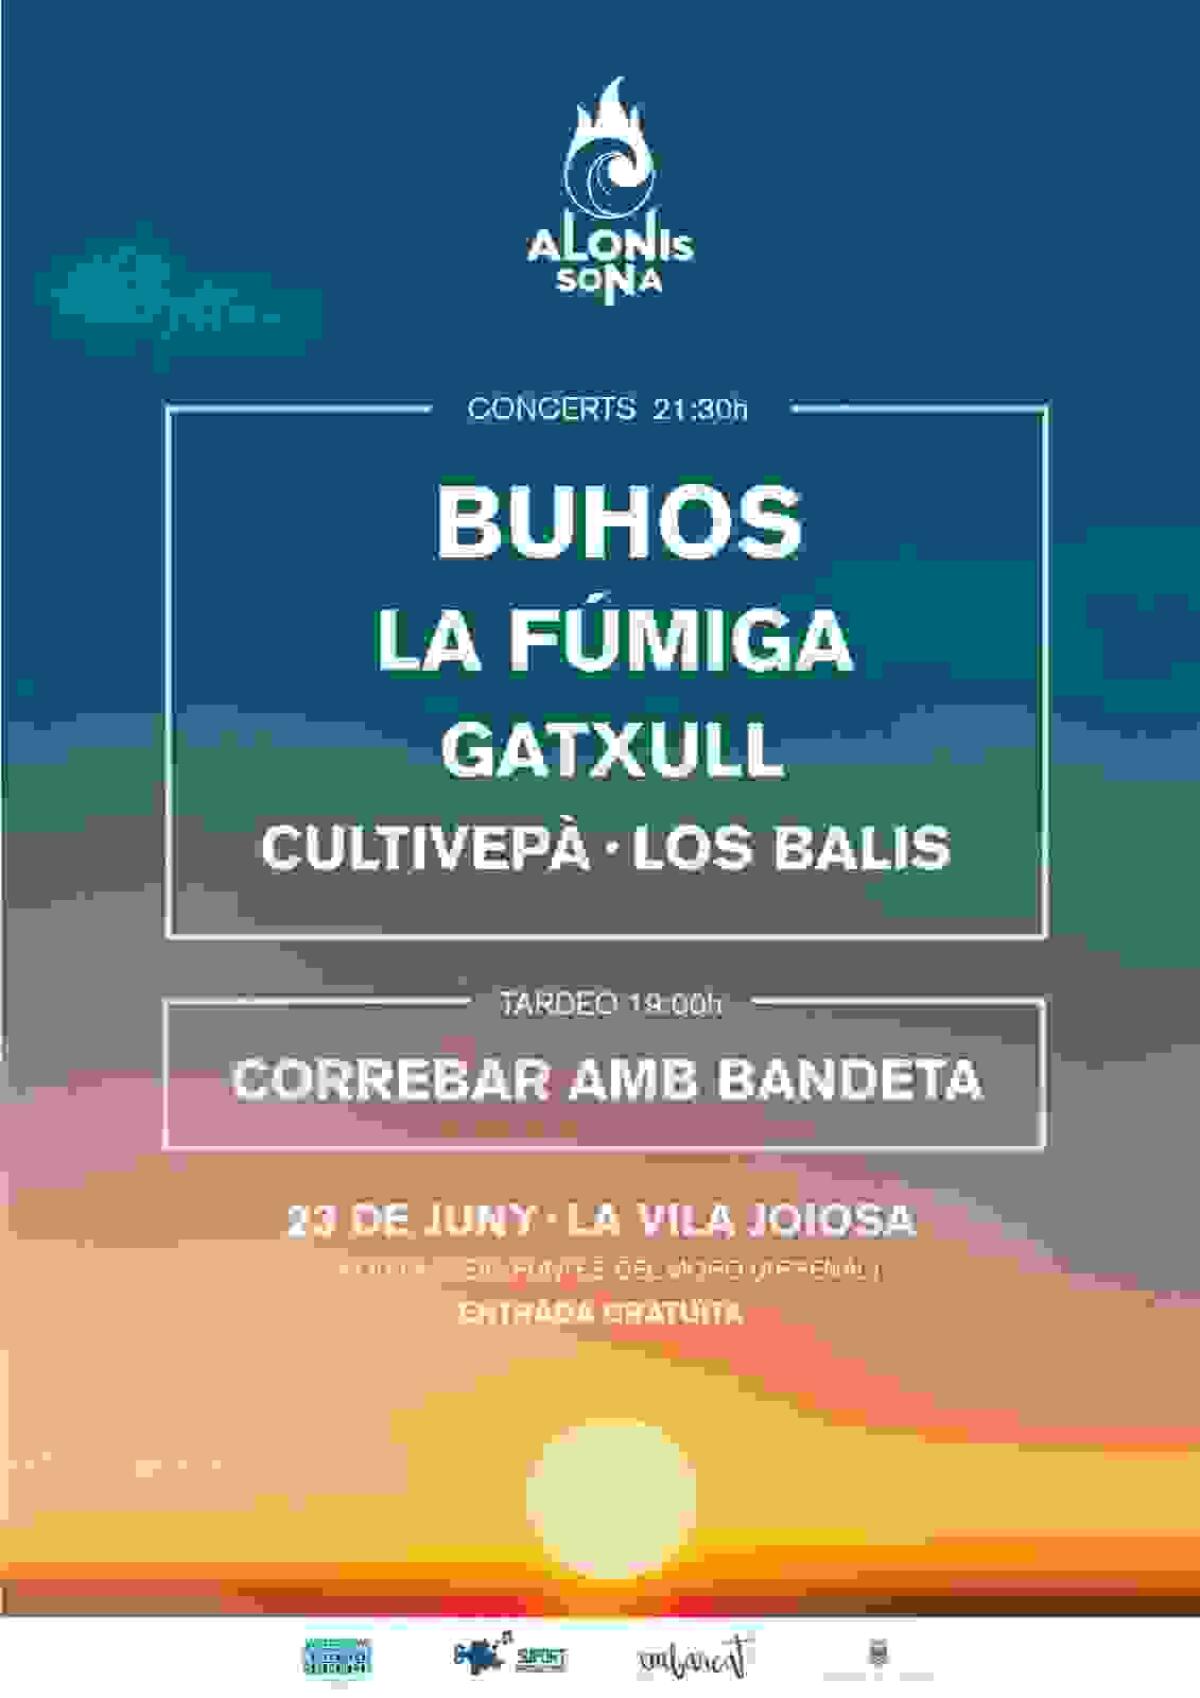 La Vila // Juventud organiza otra edición del festival de música Alonis Sona 